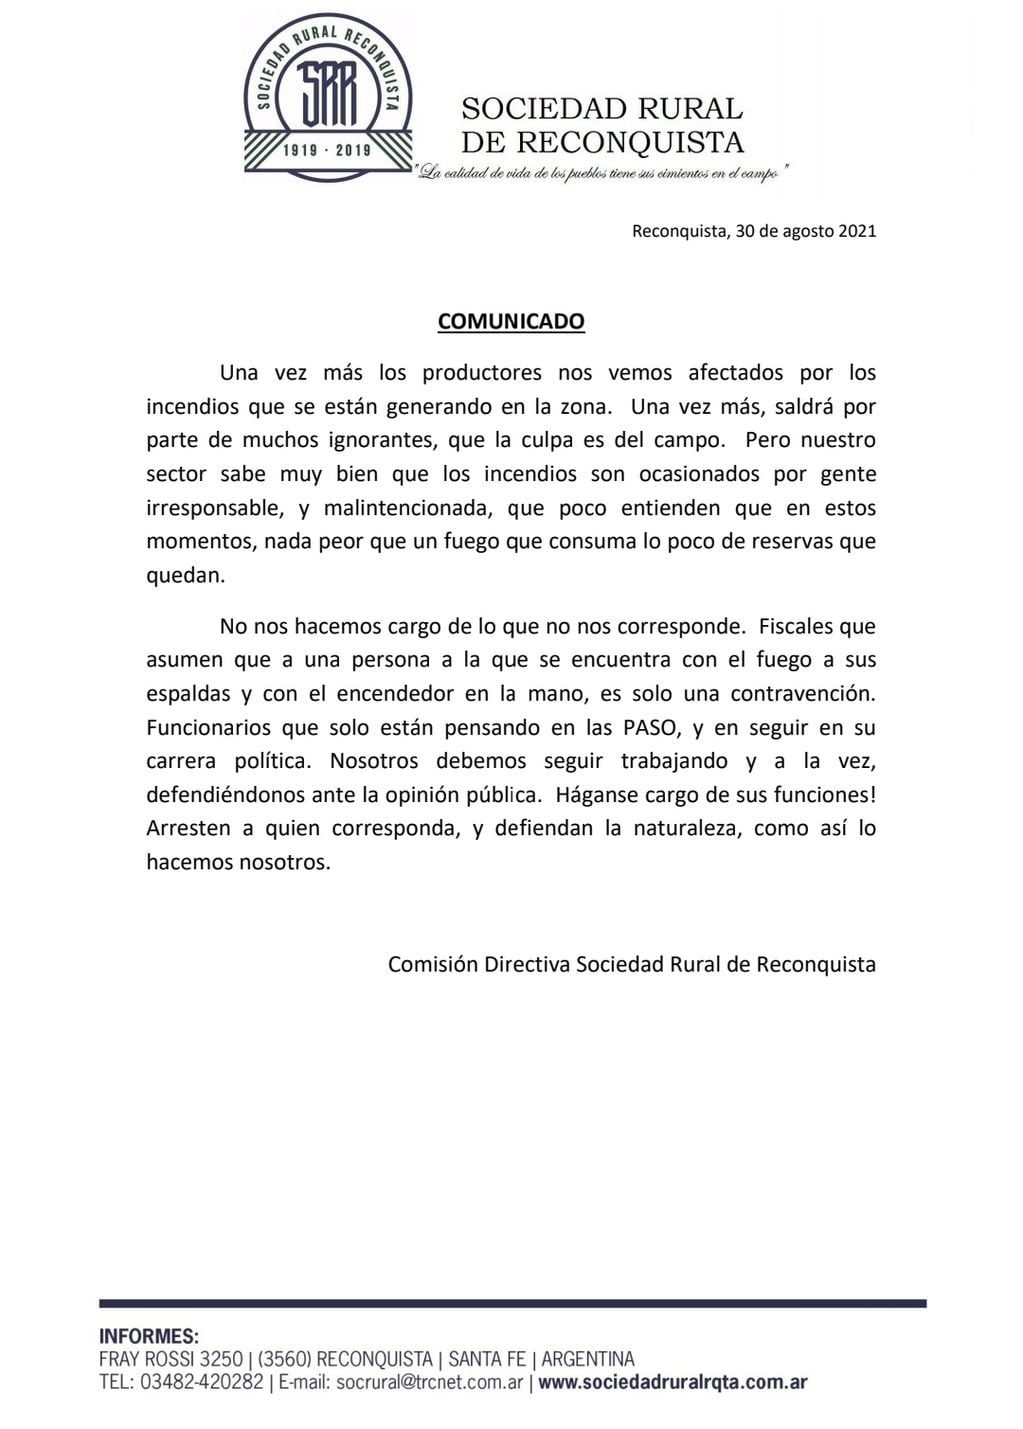 El comunicado emitido por la Sociedad Rural de Reconquista